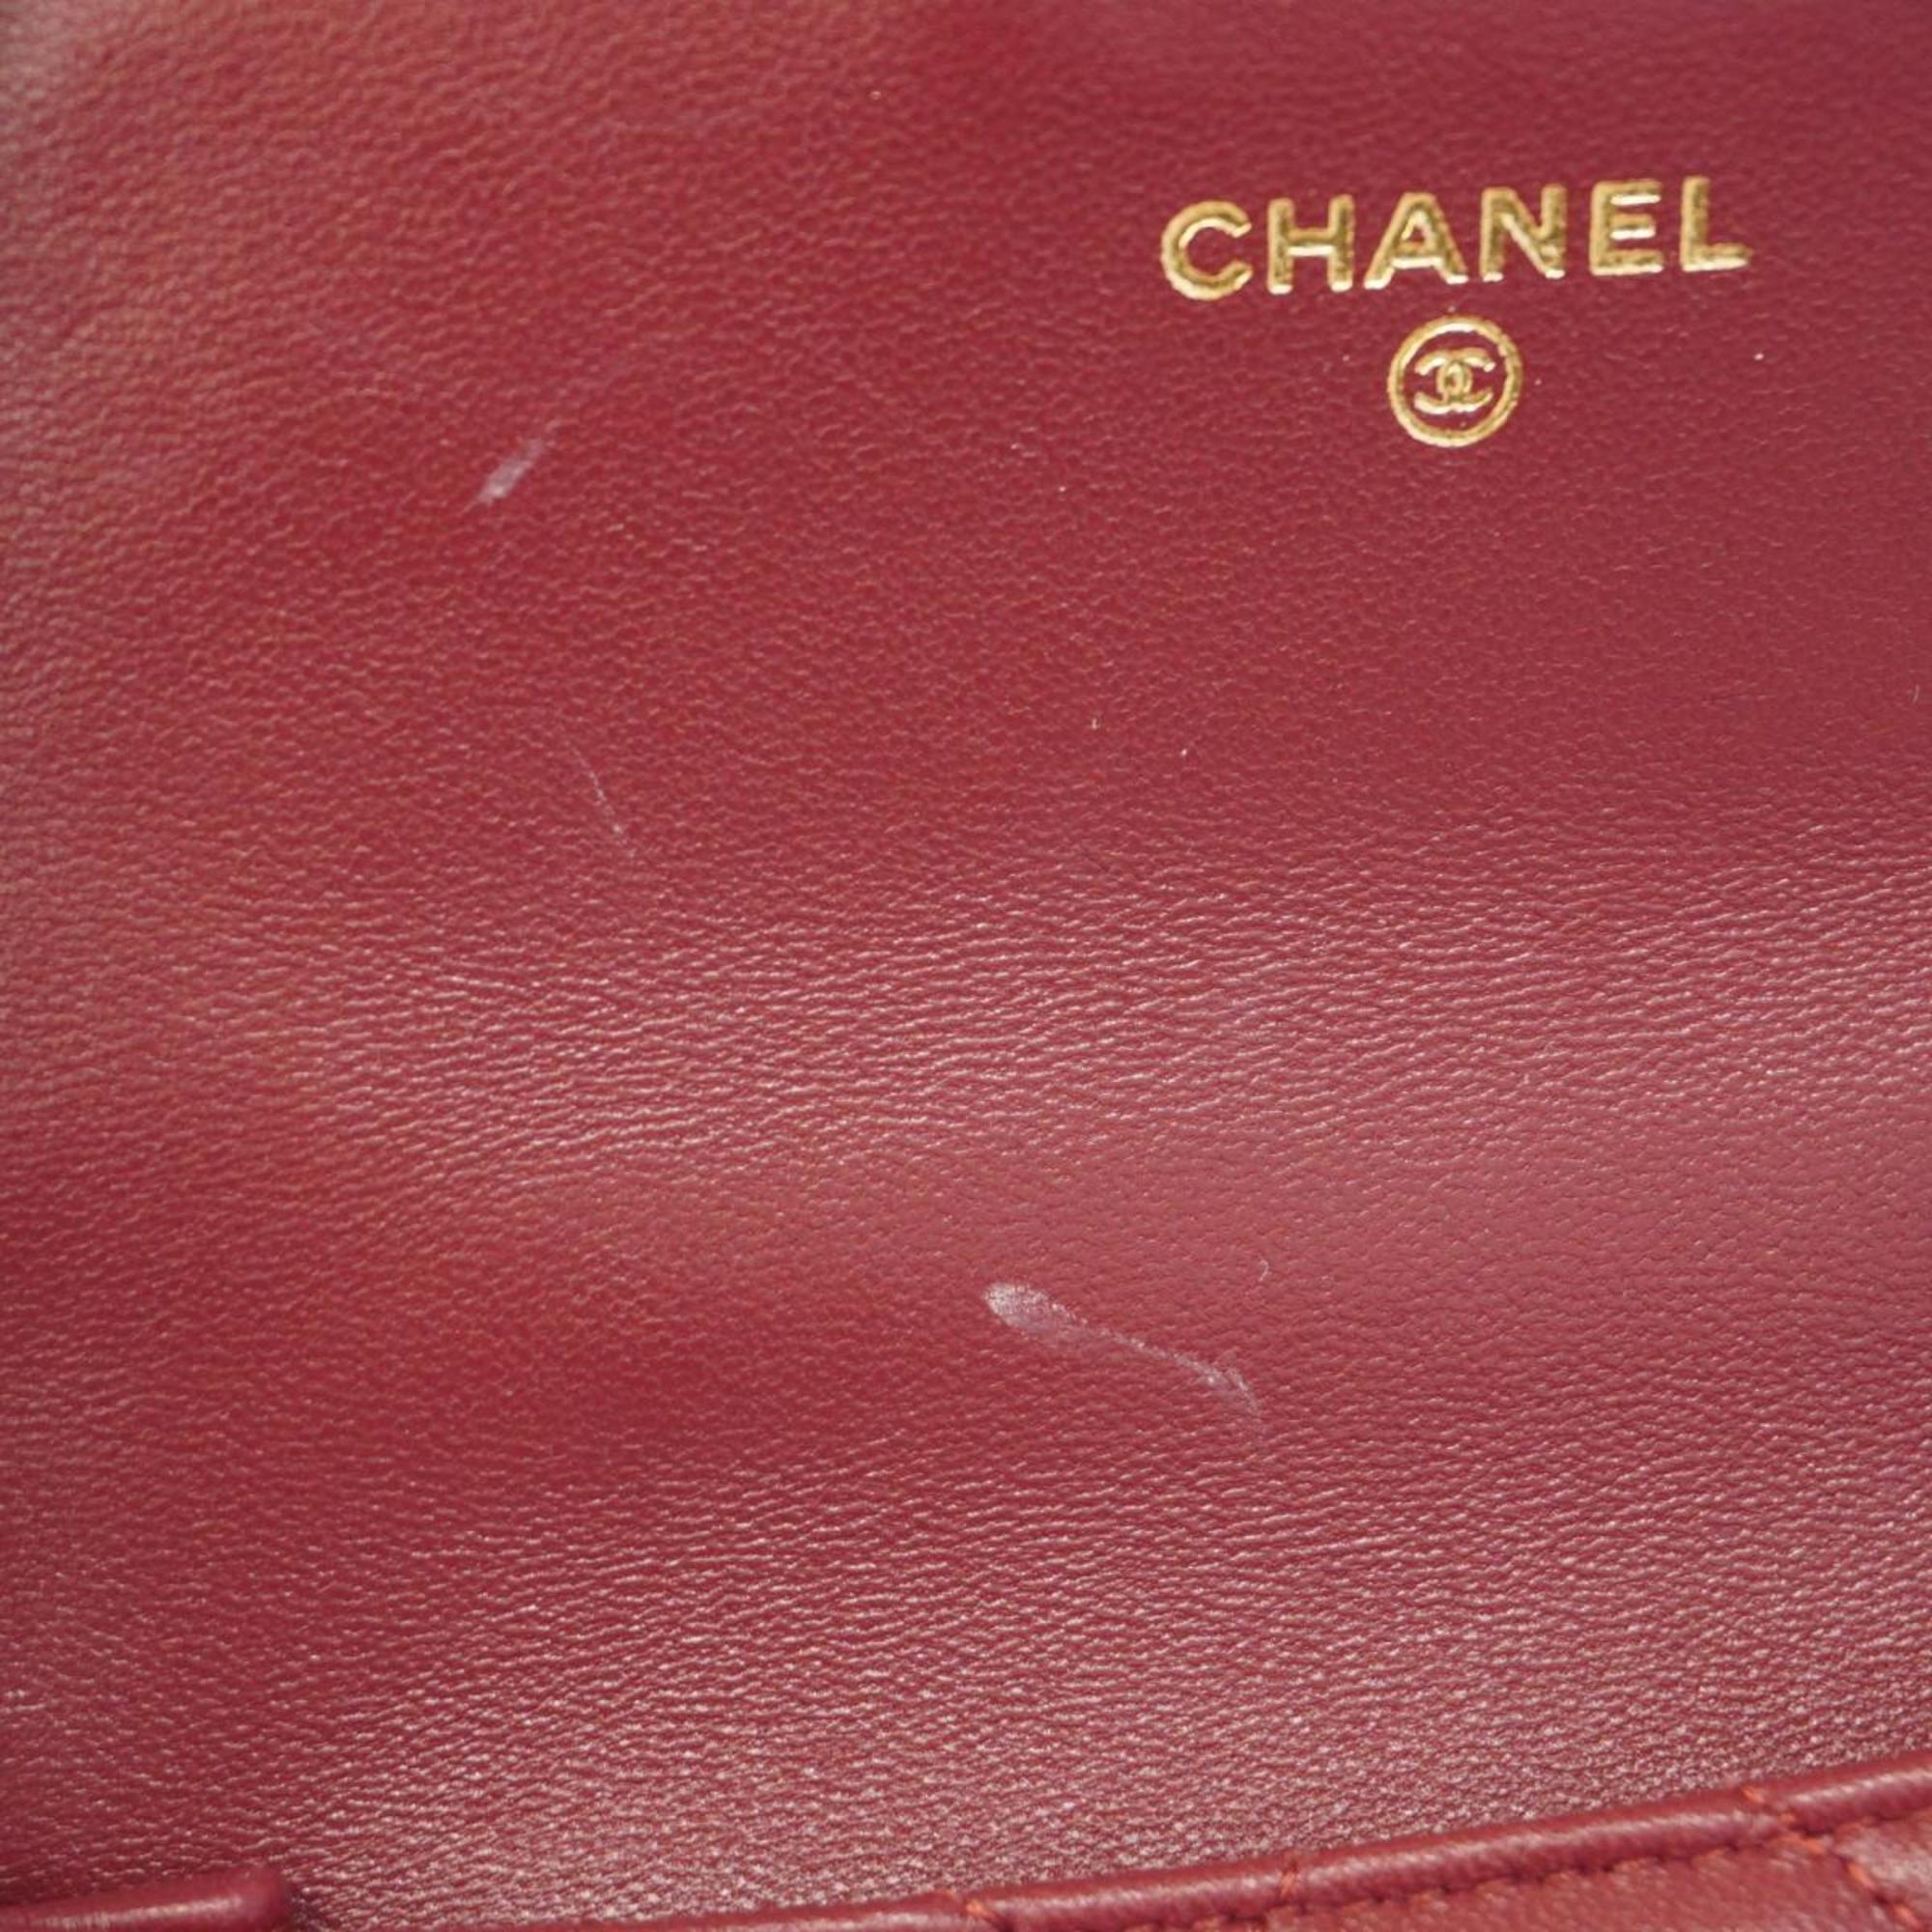 シャネル(Chanel) シャネル ハンドバッグ マトラッセ チェーンショルダー ラムスキン ボルドー シャンパン  レディース